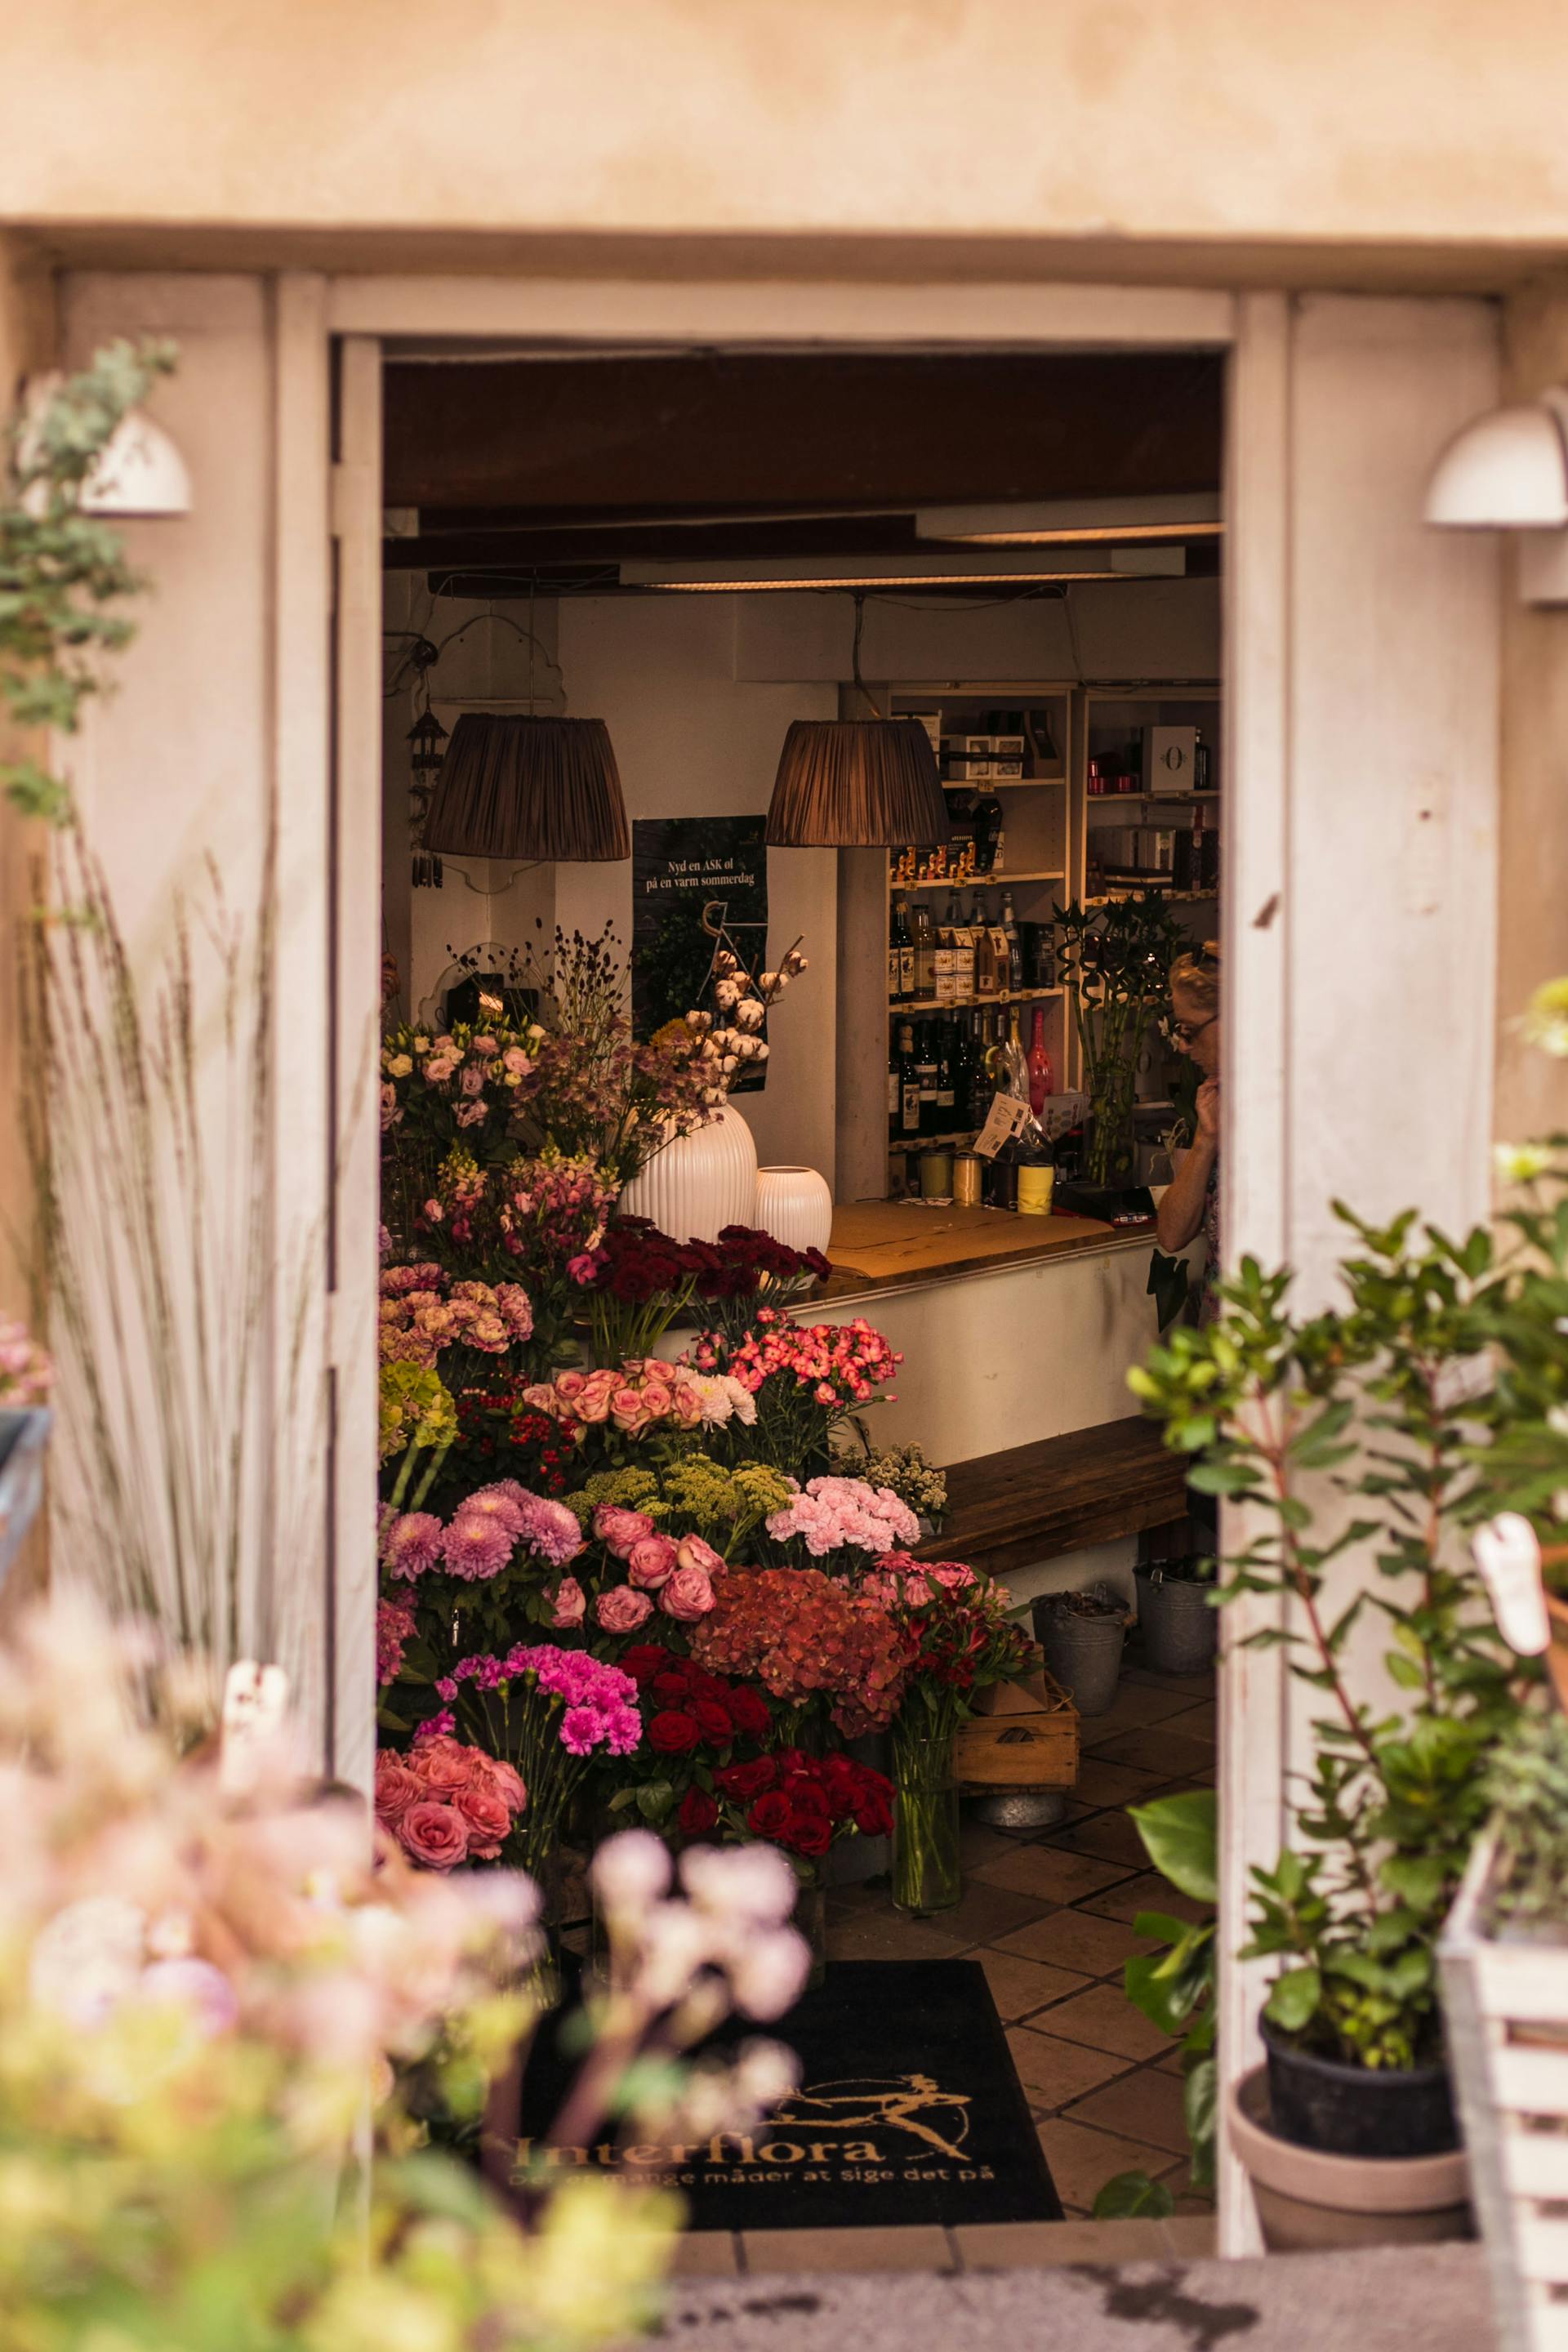 Exterior de una floristería | Fuente: Pexels